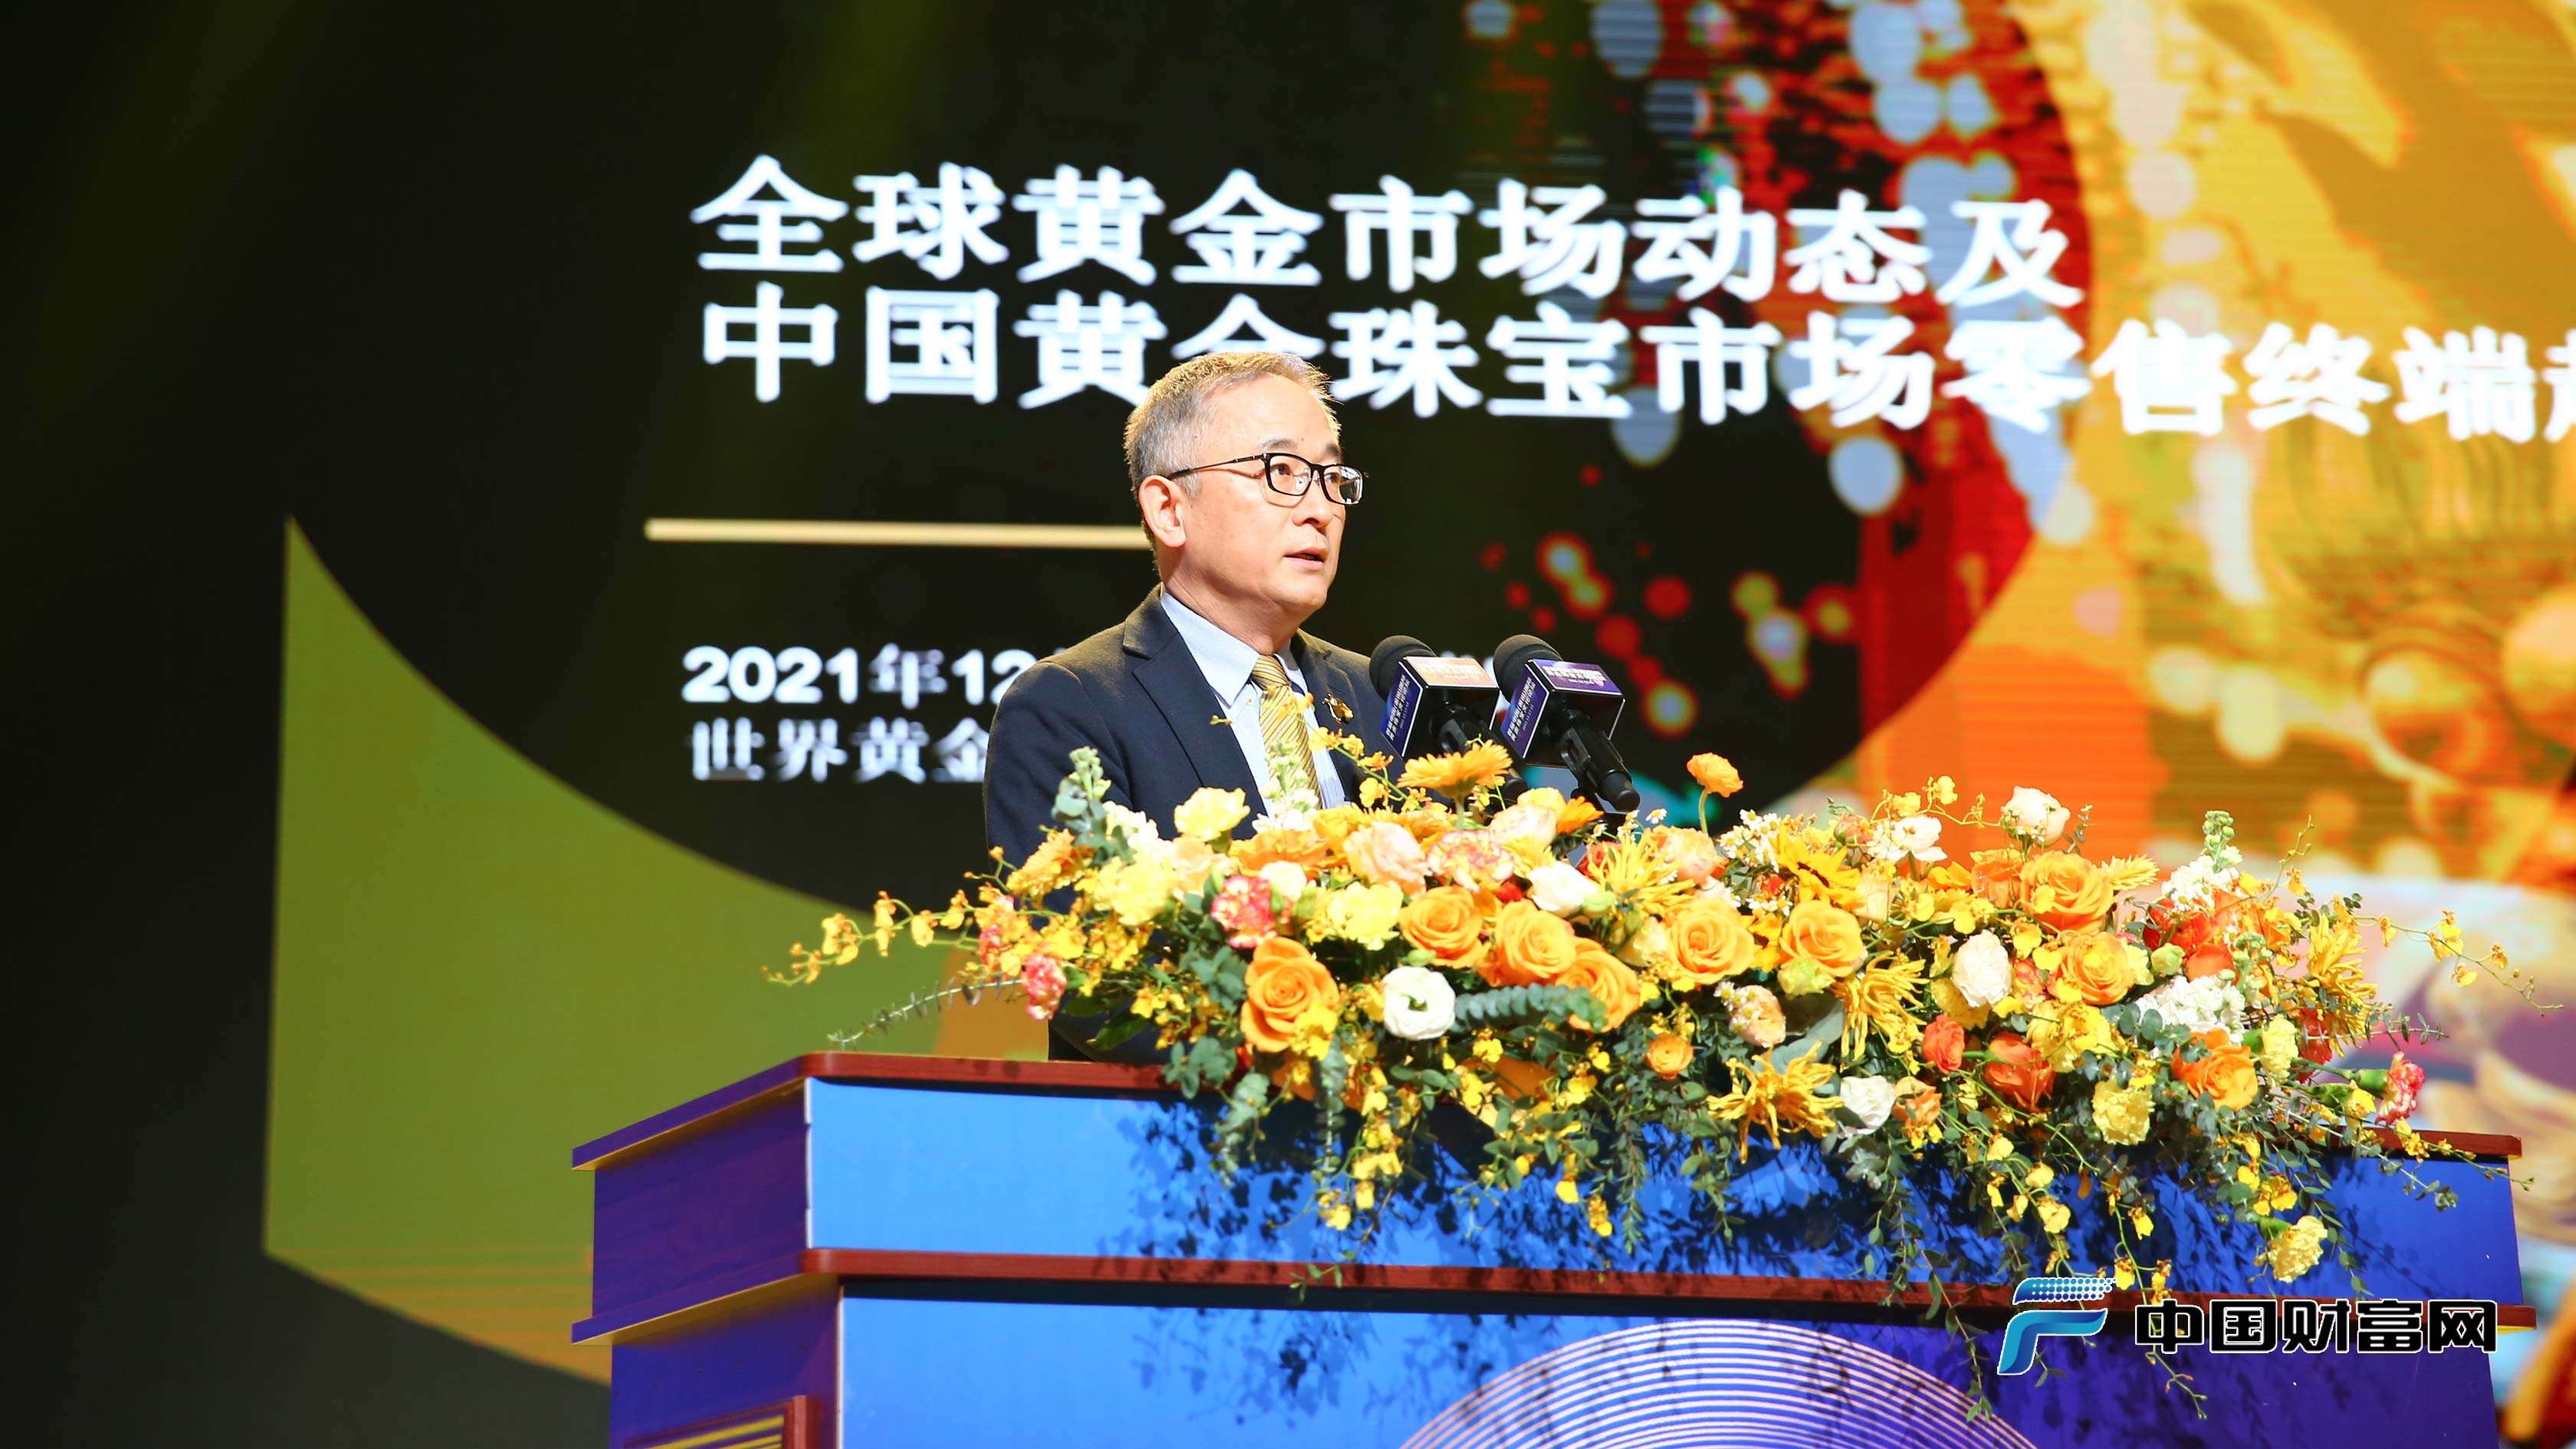 世界黄金协会中国区CEO王立新发表演讲